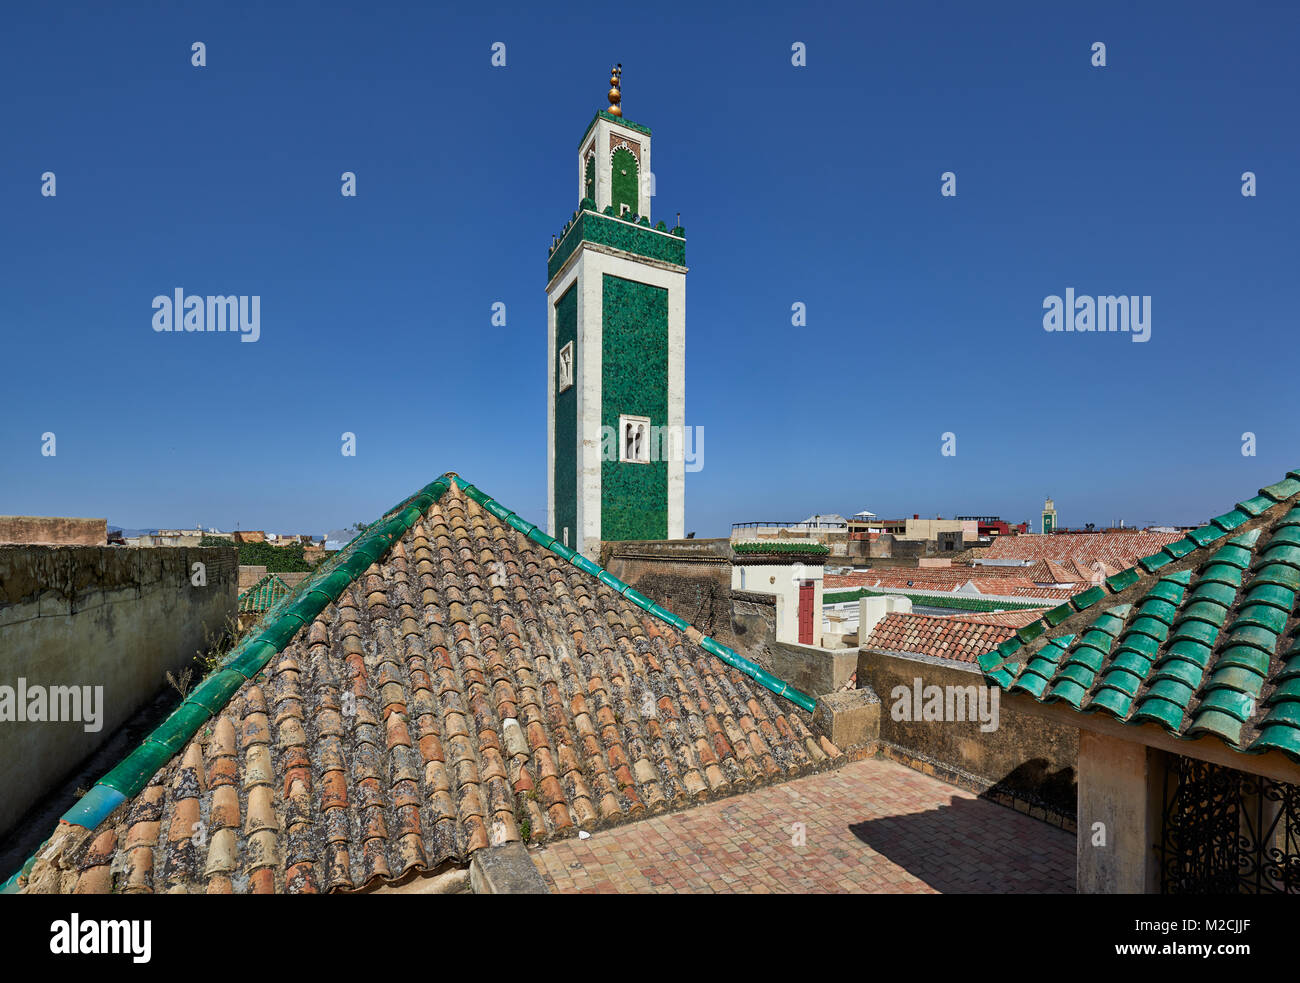 Vista dal tetto del Bou Inania Madrasa con minareto della moschea e verde tetto islamica piastrelle, Meknes, Marocco, Africa Foto Stock